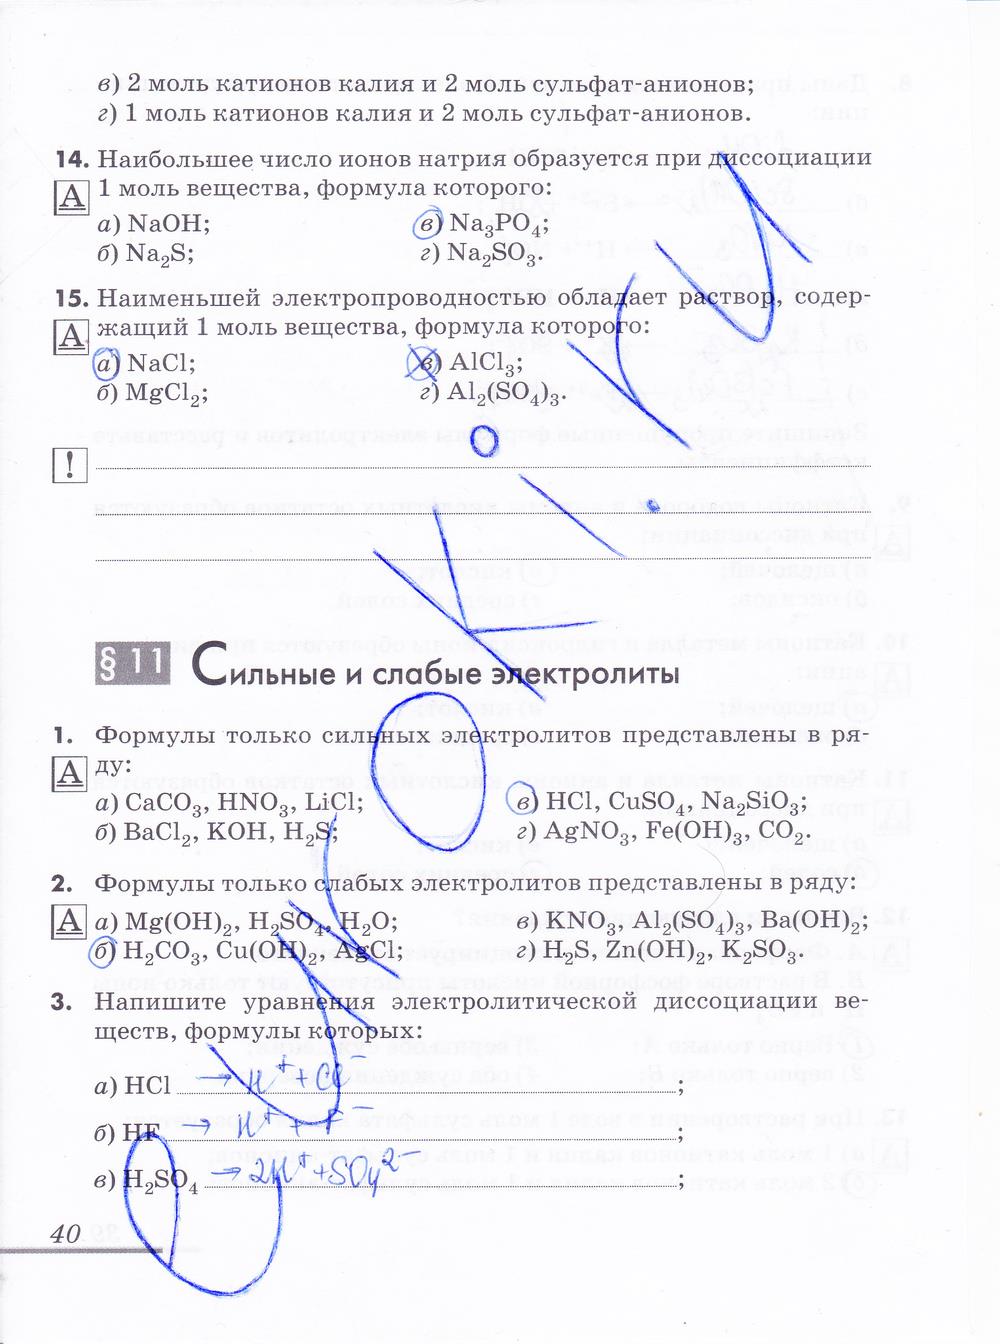 гдз 9 класс рабочая тетрадь страница 40 химия Еремин, Дроздов